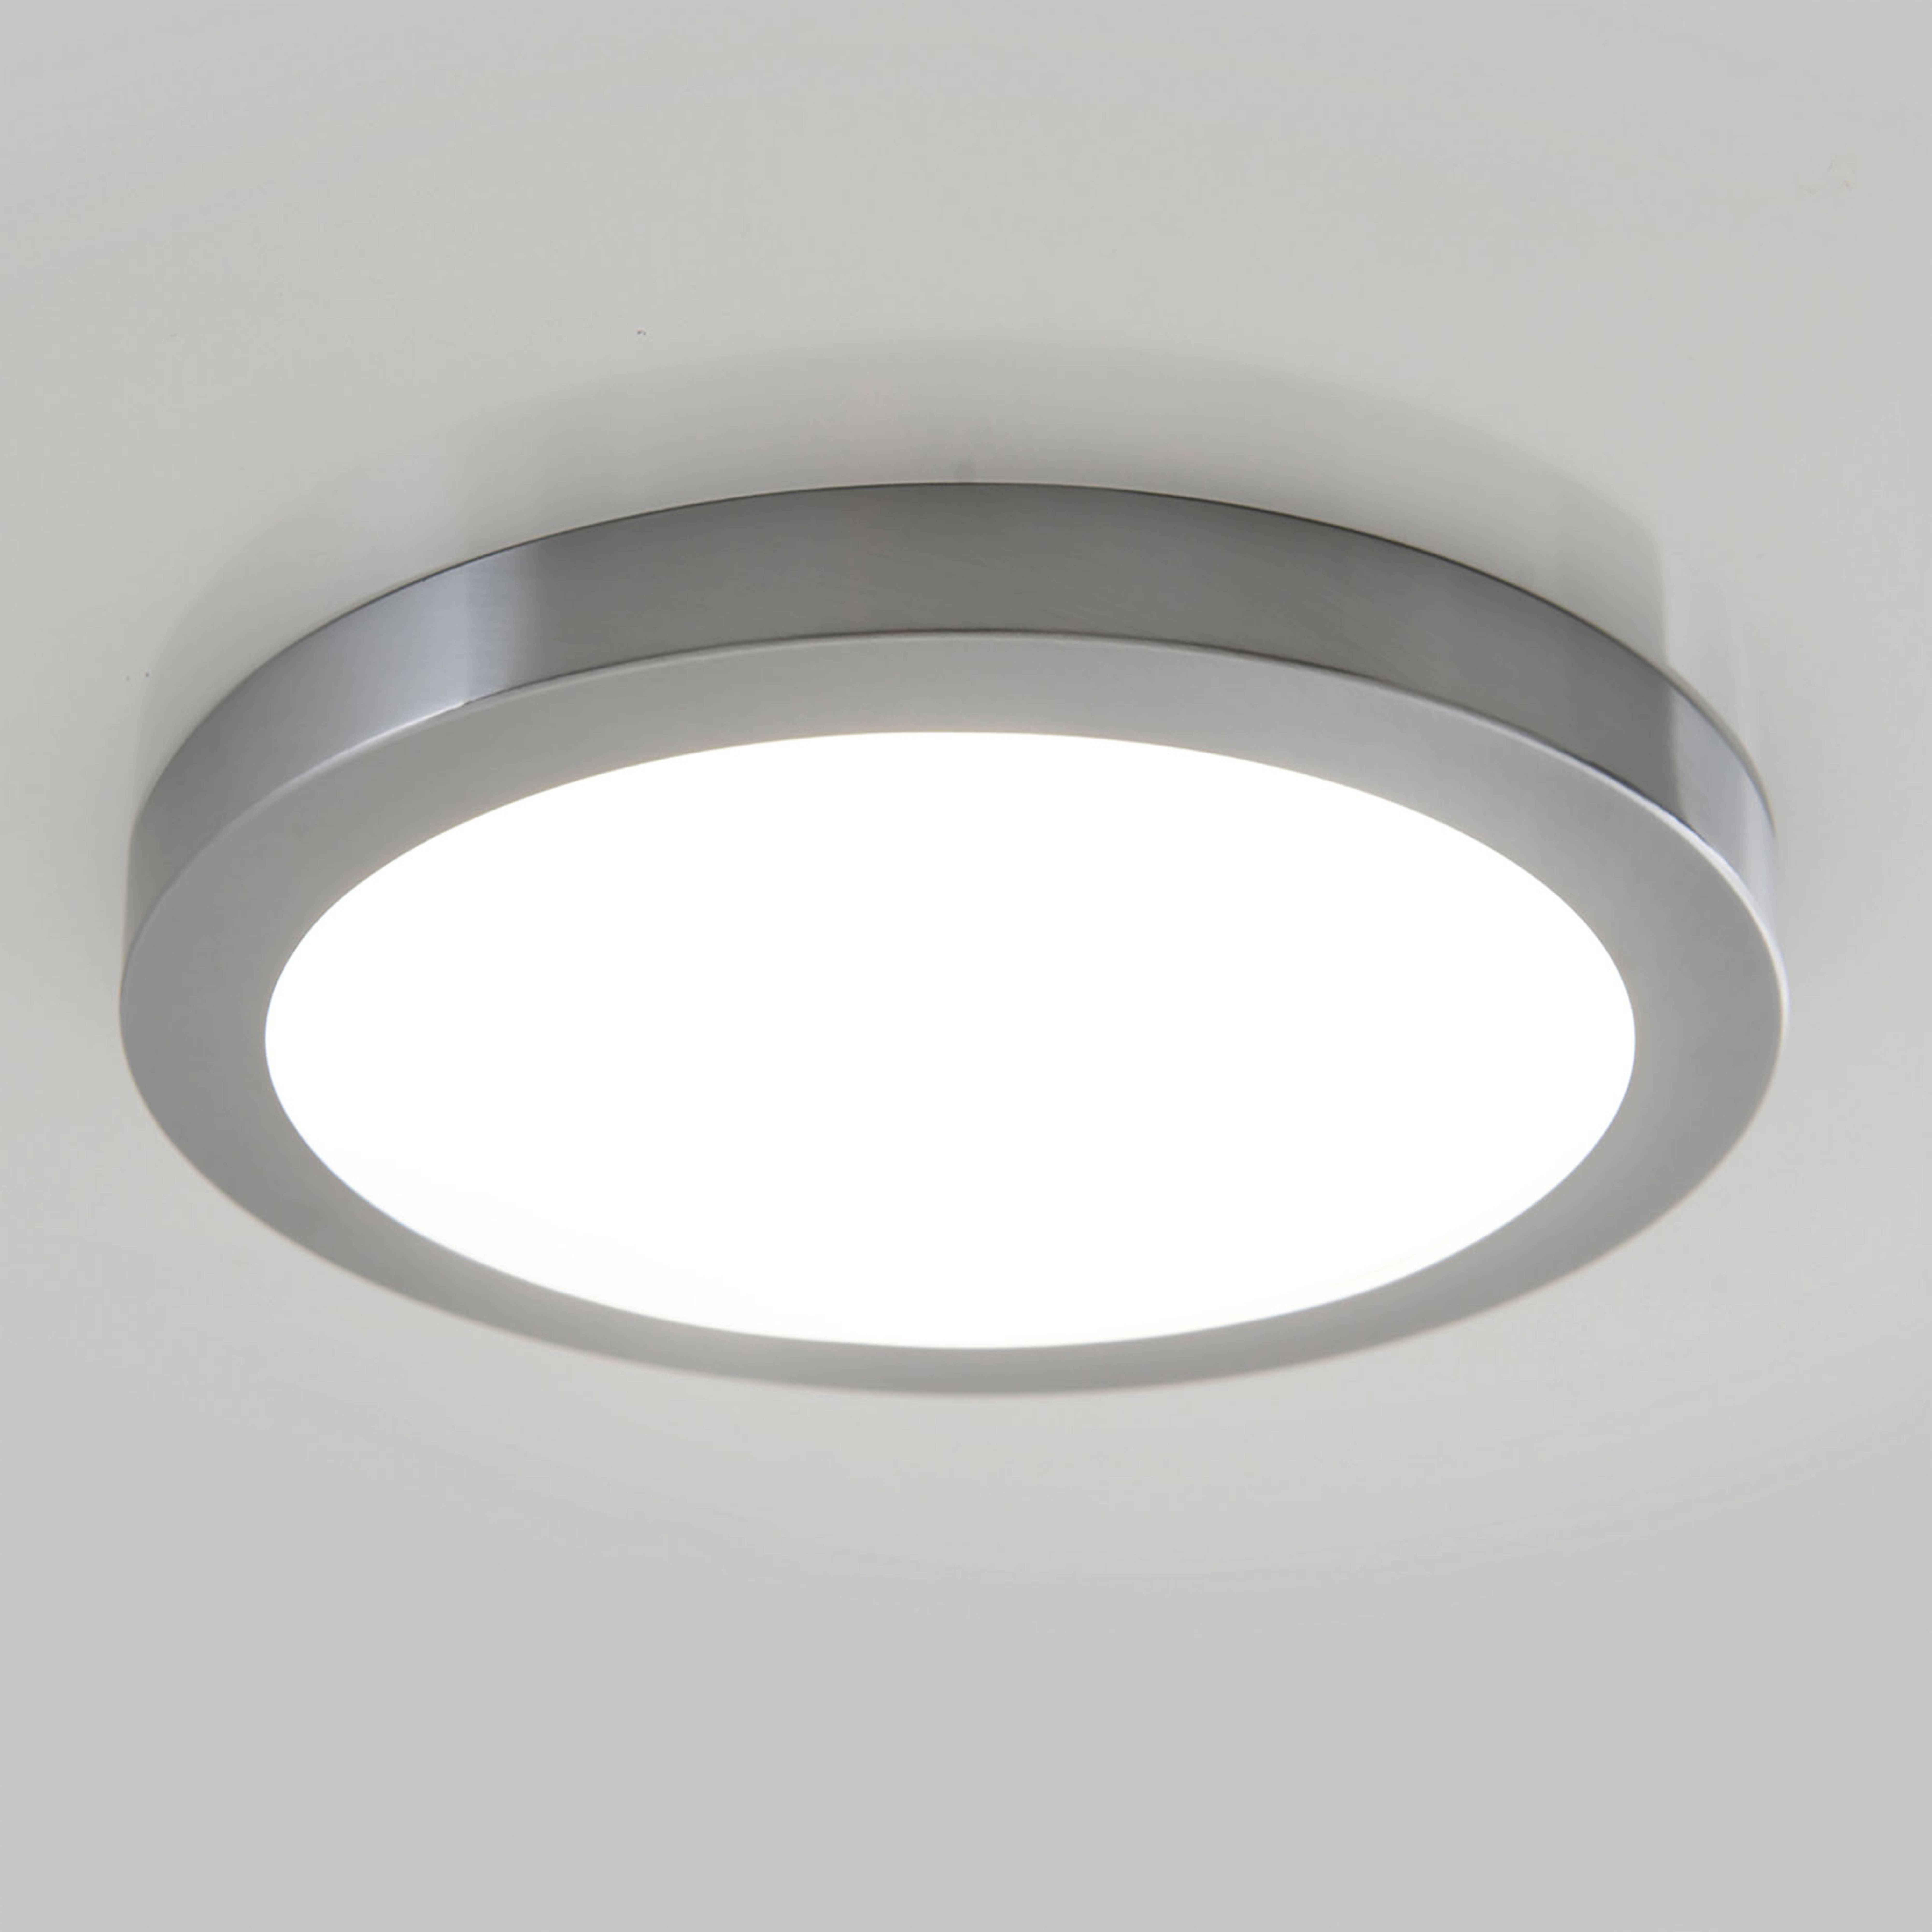 Φωτιστικό οροφής LED Bonus με μαγνητικό δακτύλιο, Ø 22,5 cm